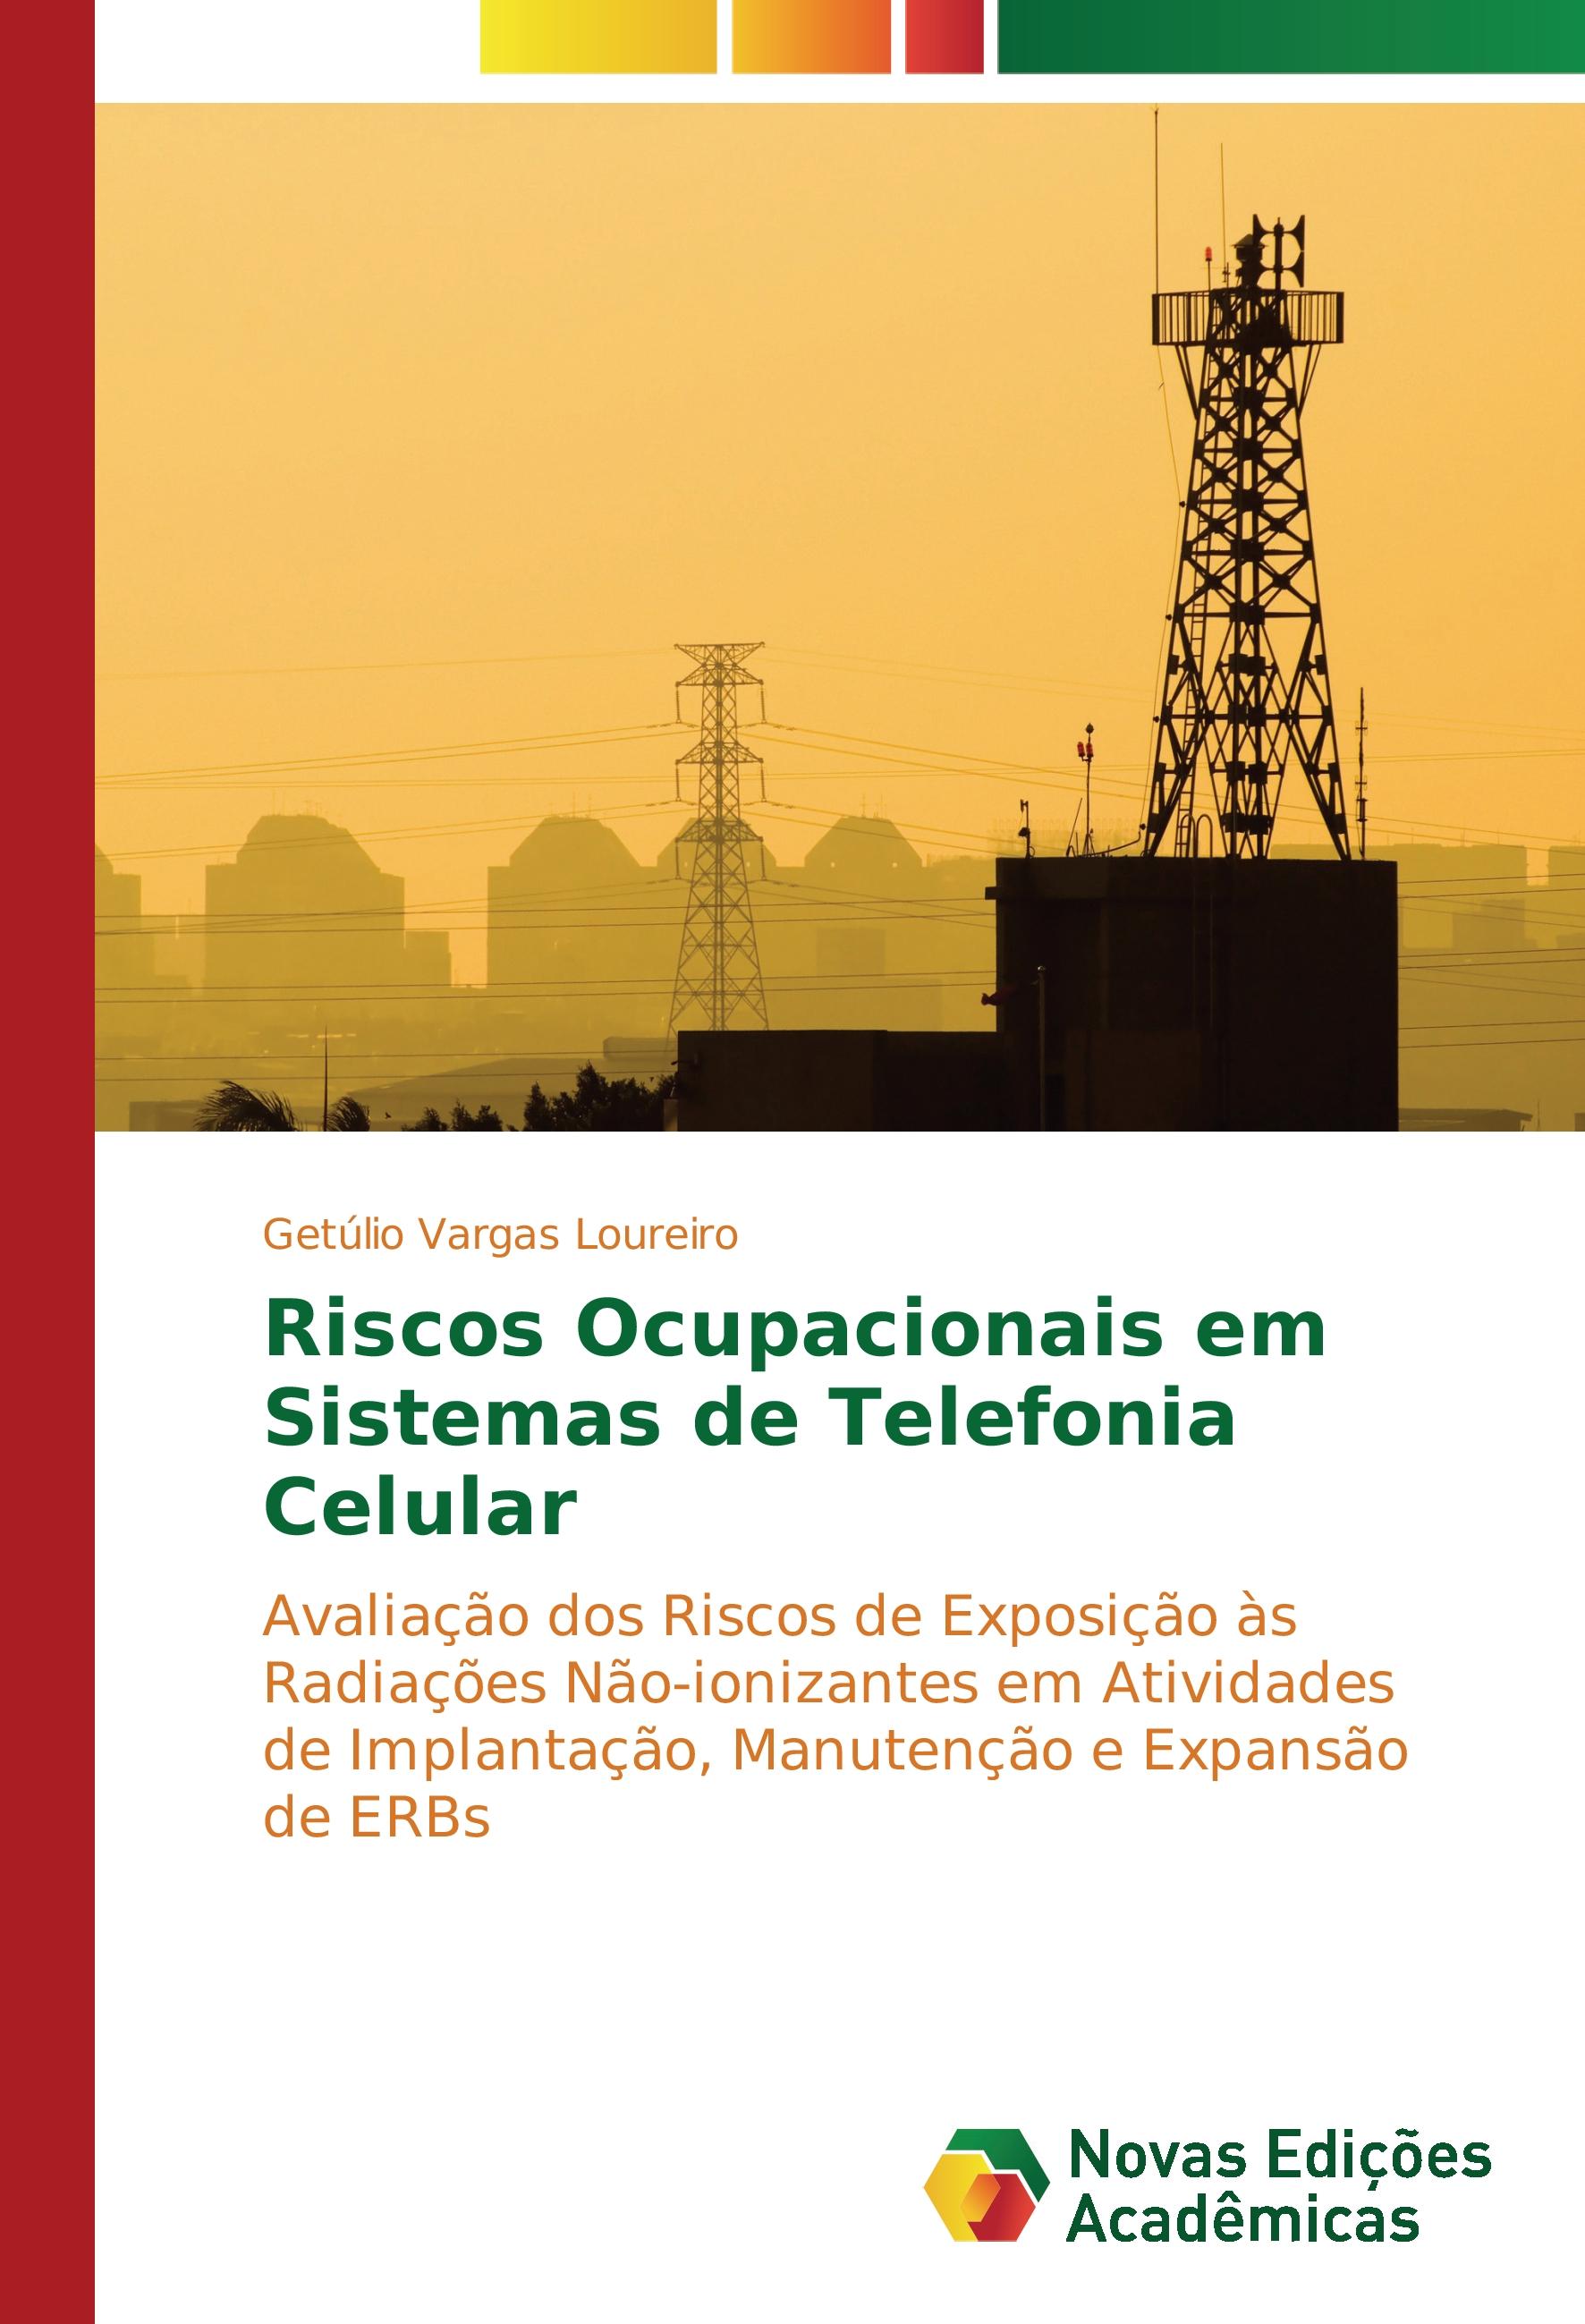 Riscos Ocupacionais em Sistemas de Telefonia Celular - Getúlio Vargas Loureiro